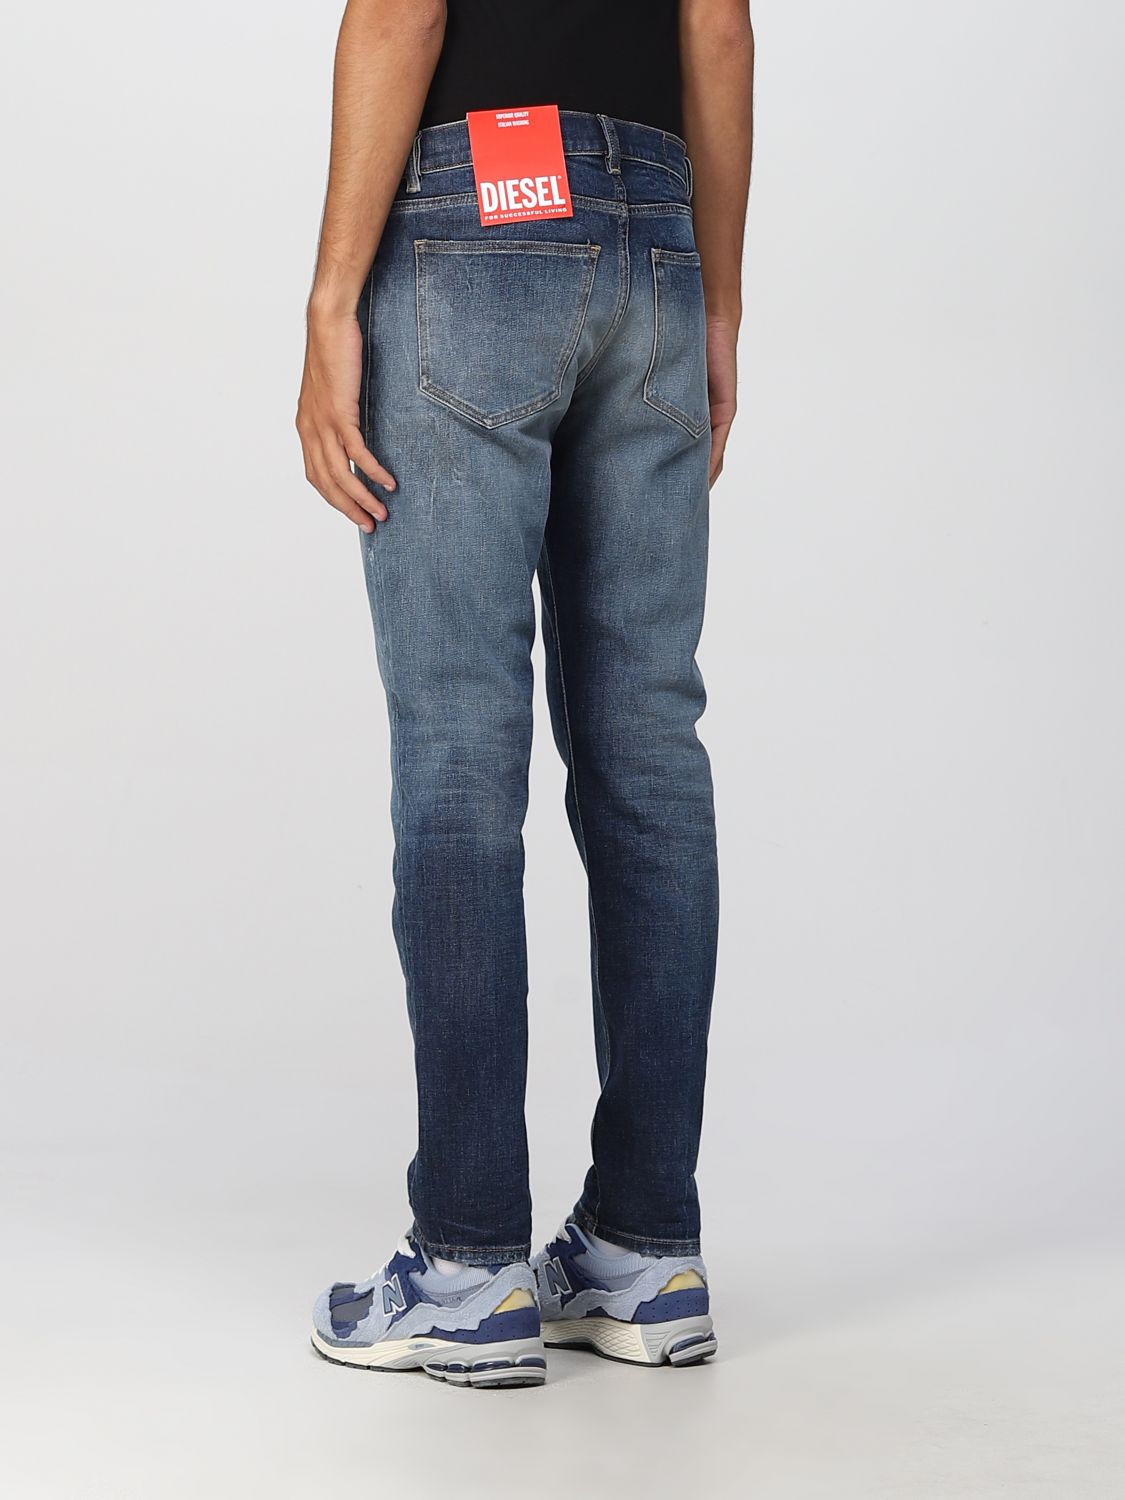 medida verano imagina DIESEL: Jeans para hombre, Denim | Jeans Diesel A0356209E14 en línea en  GIGLIO.COM